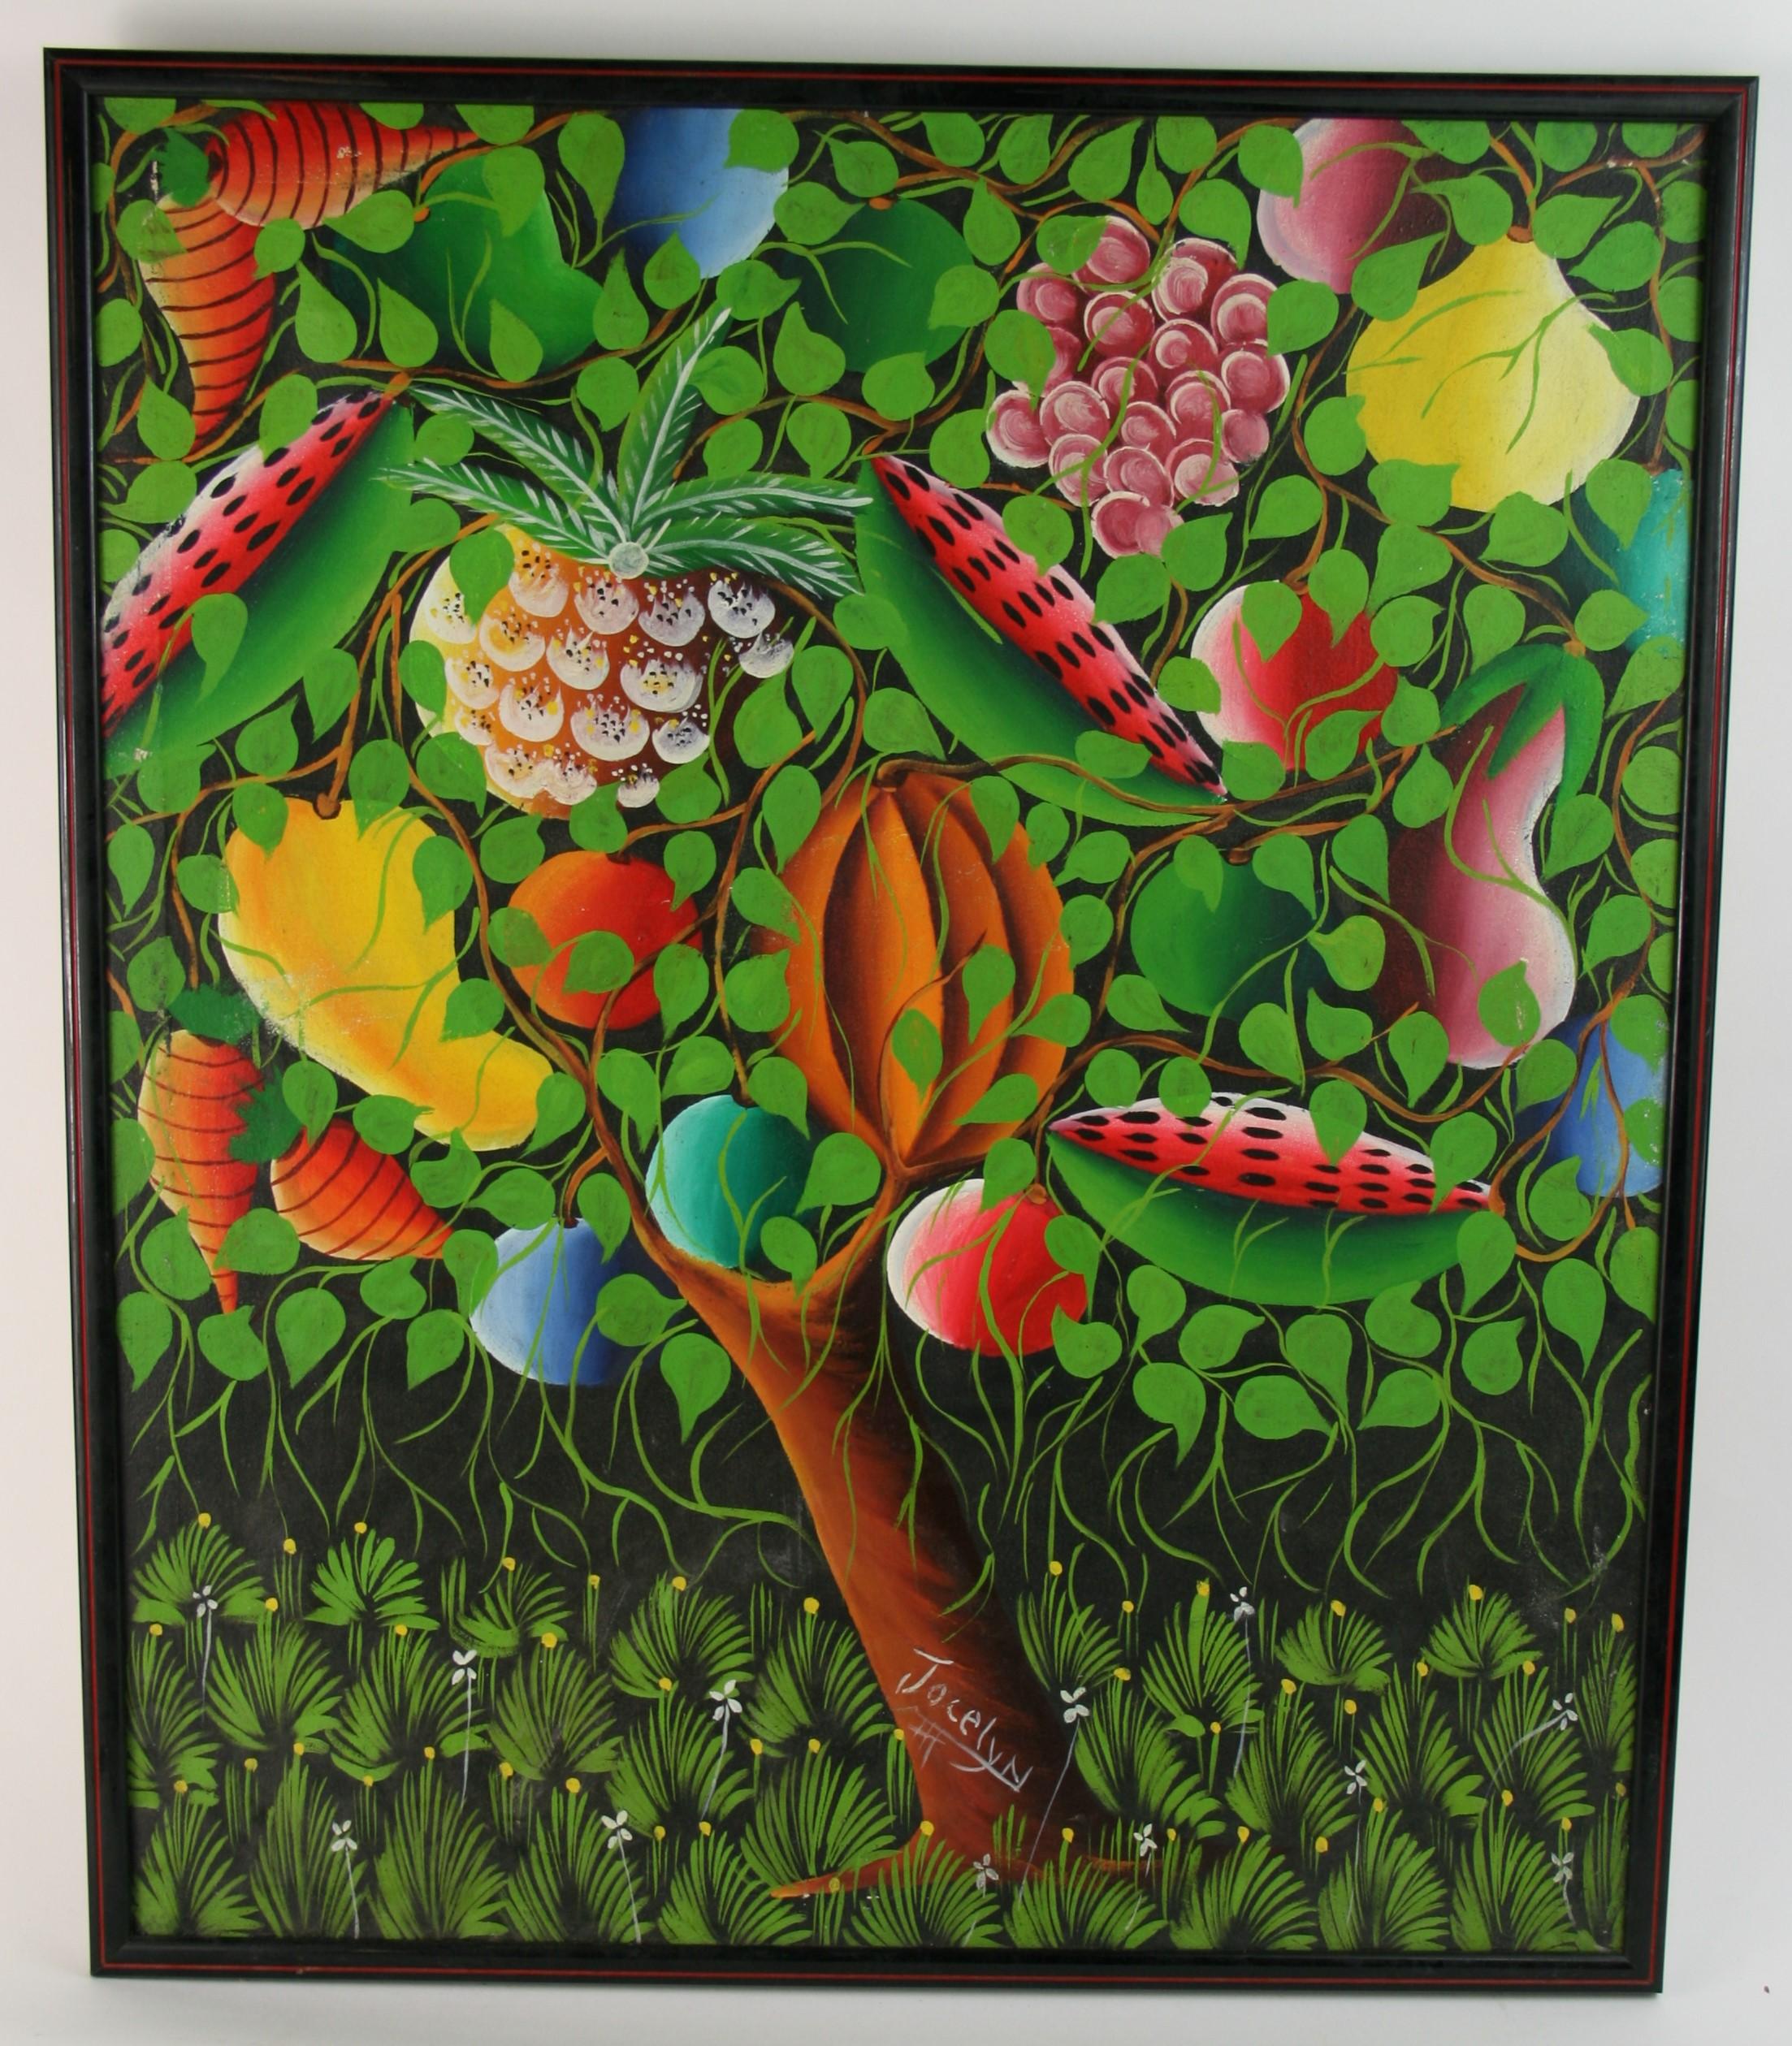 Paysage tropical fantastique surréaliste n°1 - Painting de Jocelyn